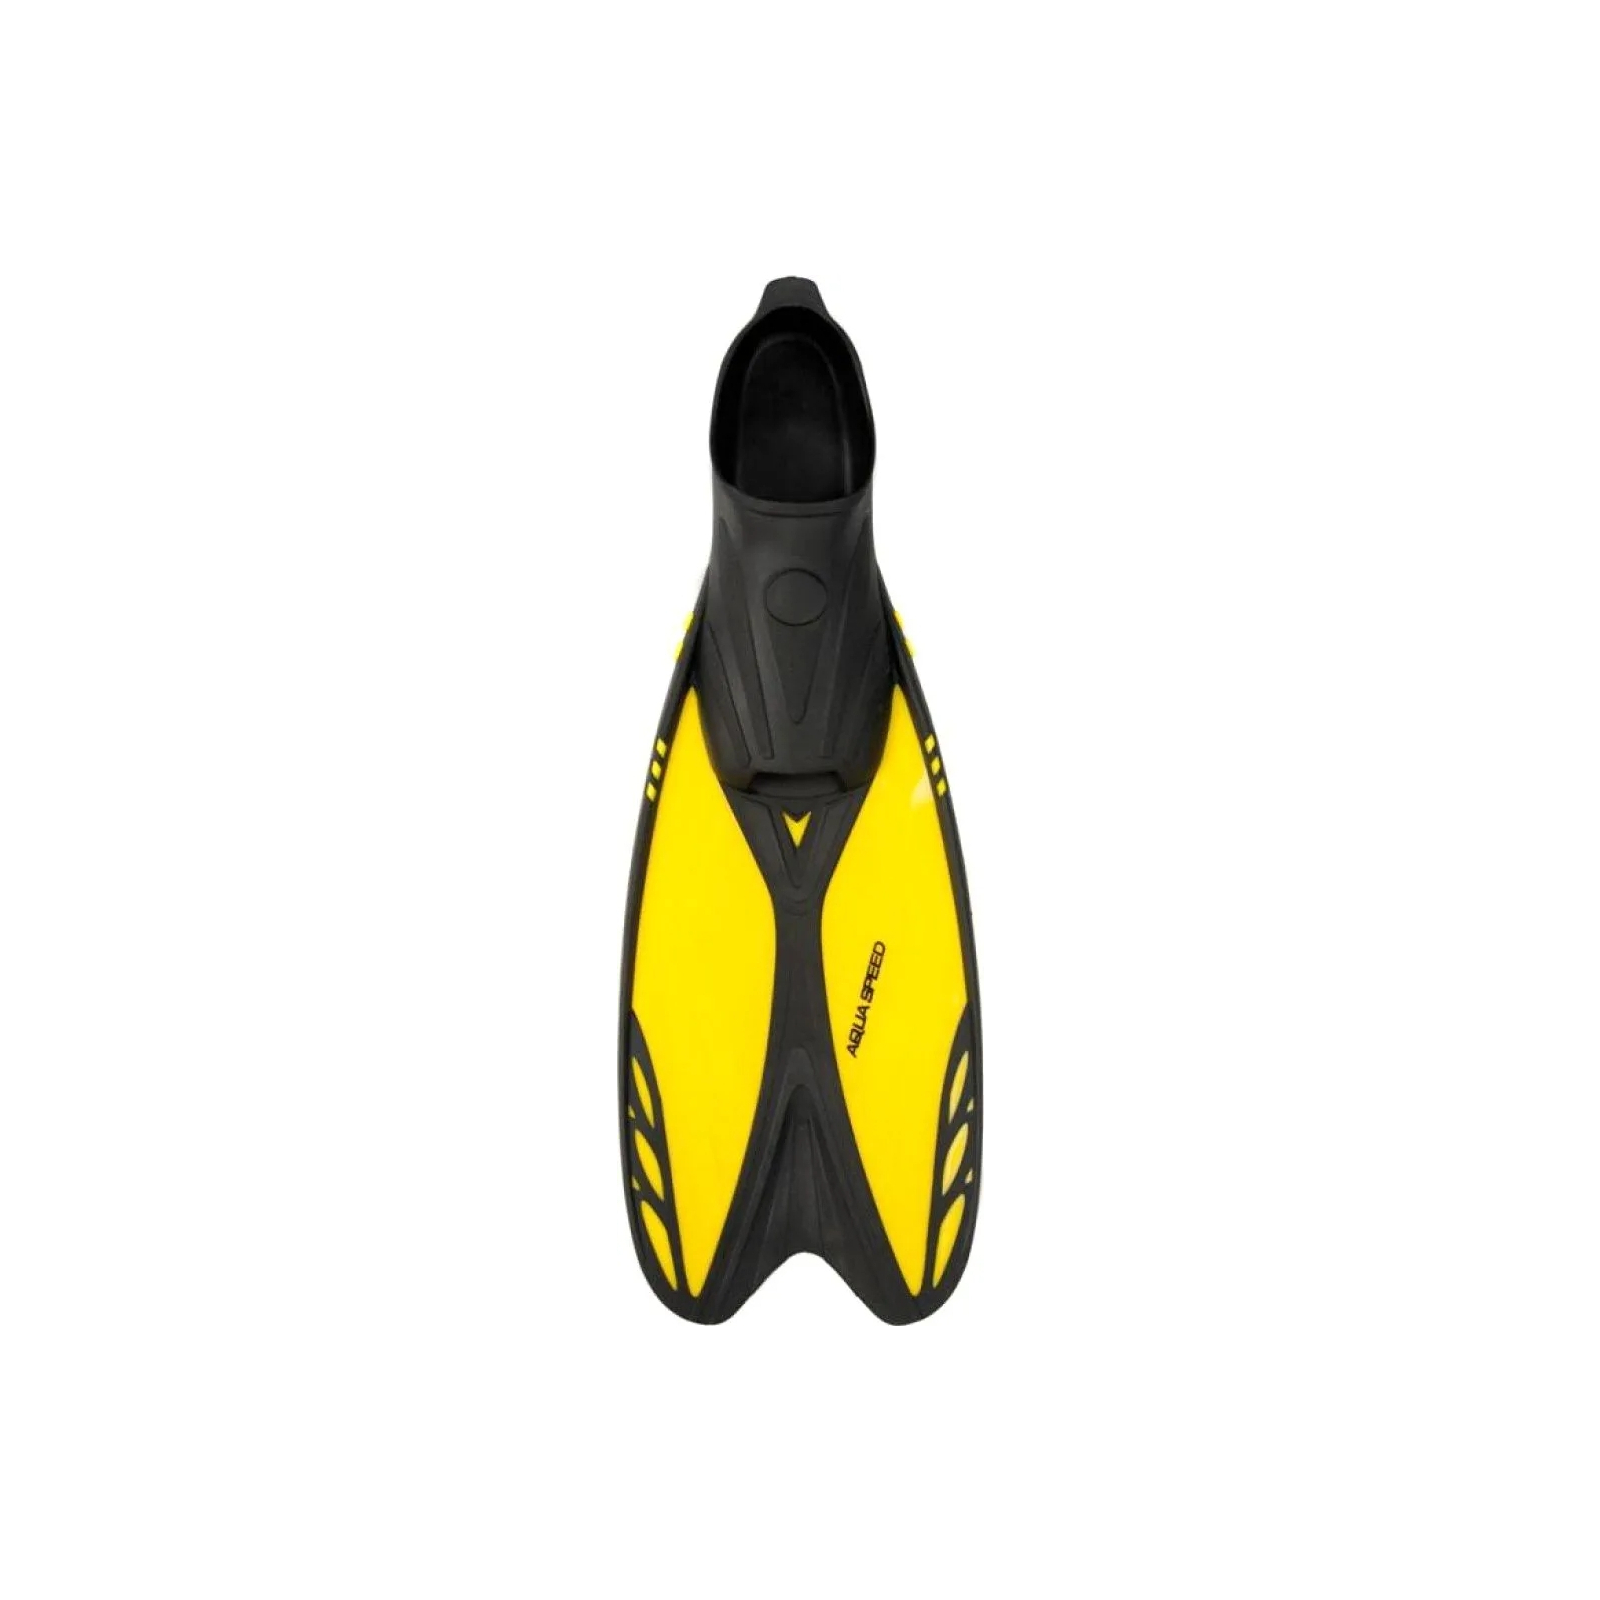 Ласты Aqua Speed Vapor 724-38 60272 жовтий, чорний 40-41 (5905718602728) изображение 2